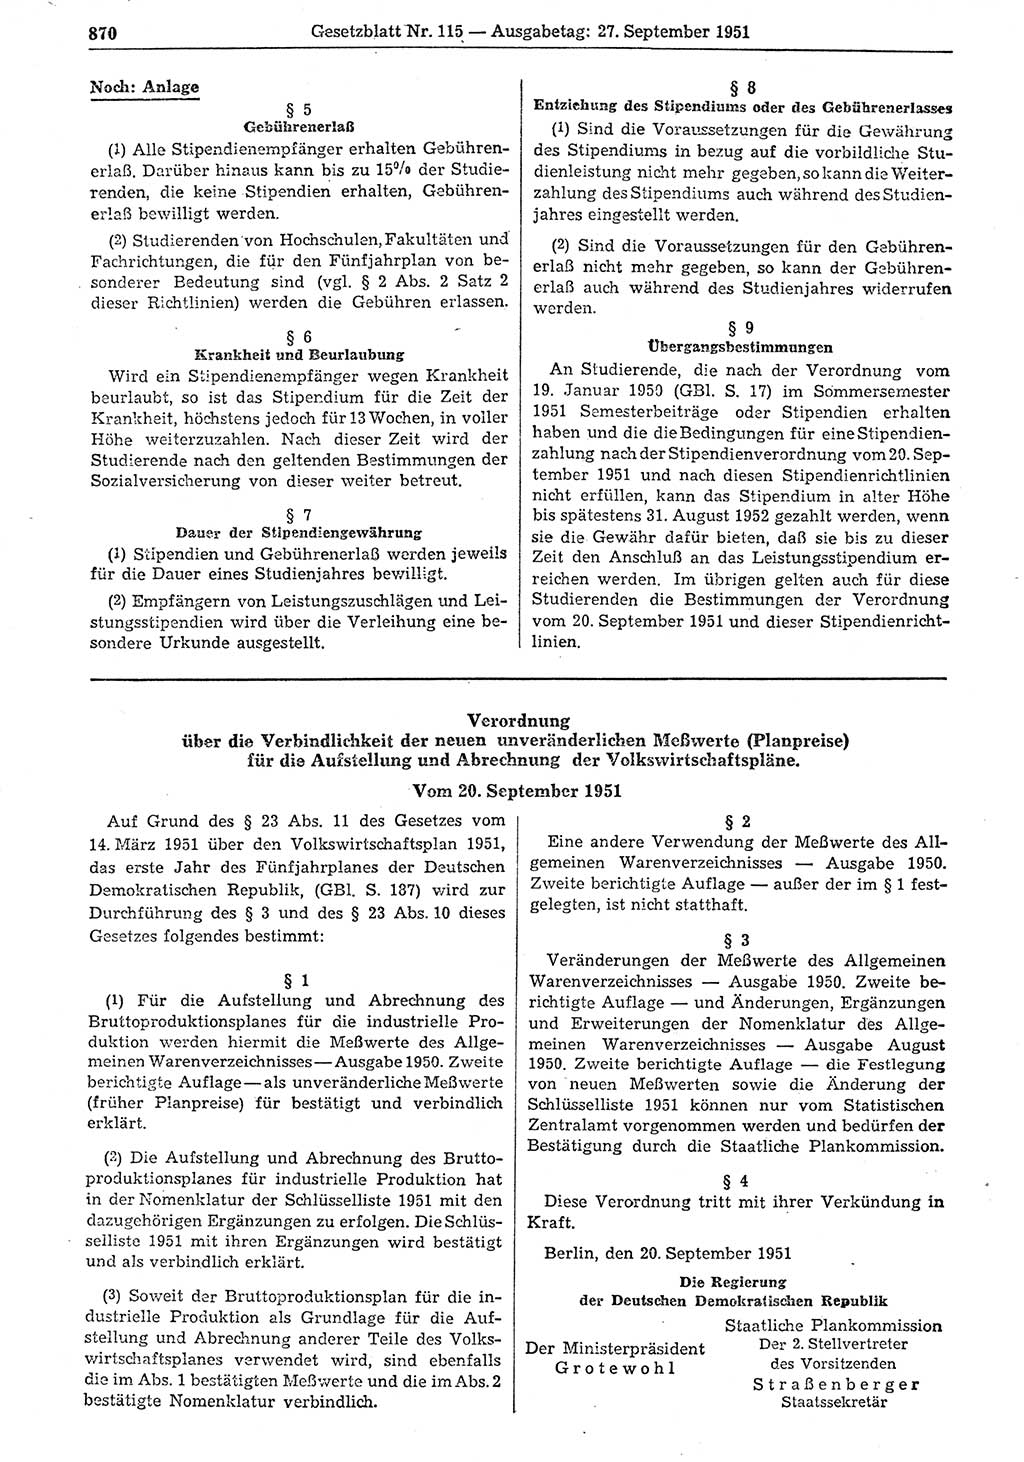 Gesetzblatt (GBl.) der Deutschen Demokratischen Republik (DDR) 1951, Seite 870 (GBl. DDR 1951, S. 870)